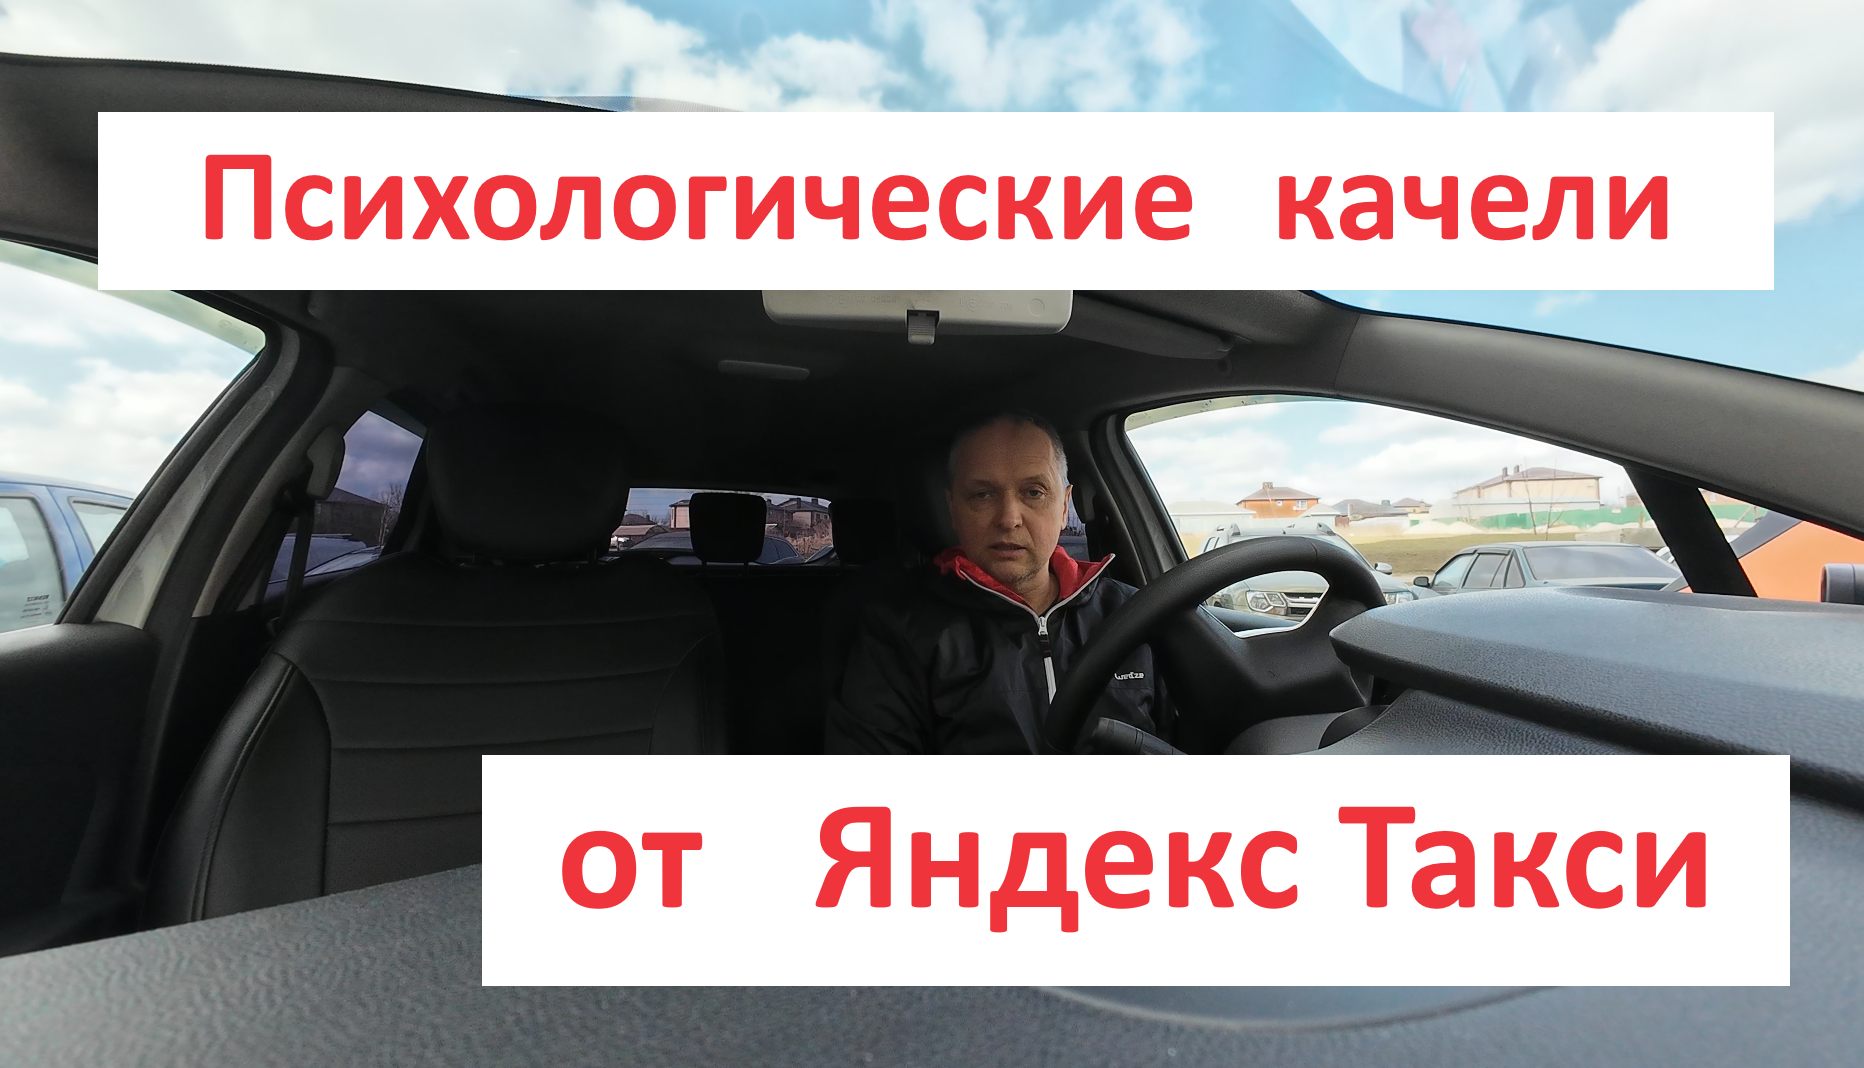 Психологические качели от Яндекс Такси.